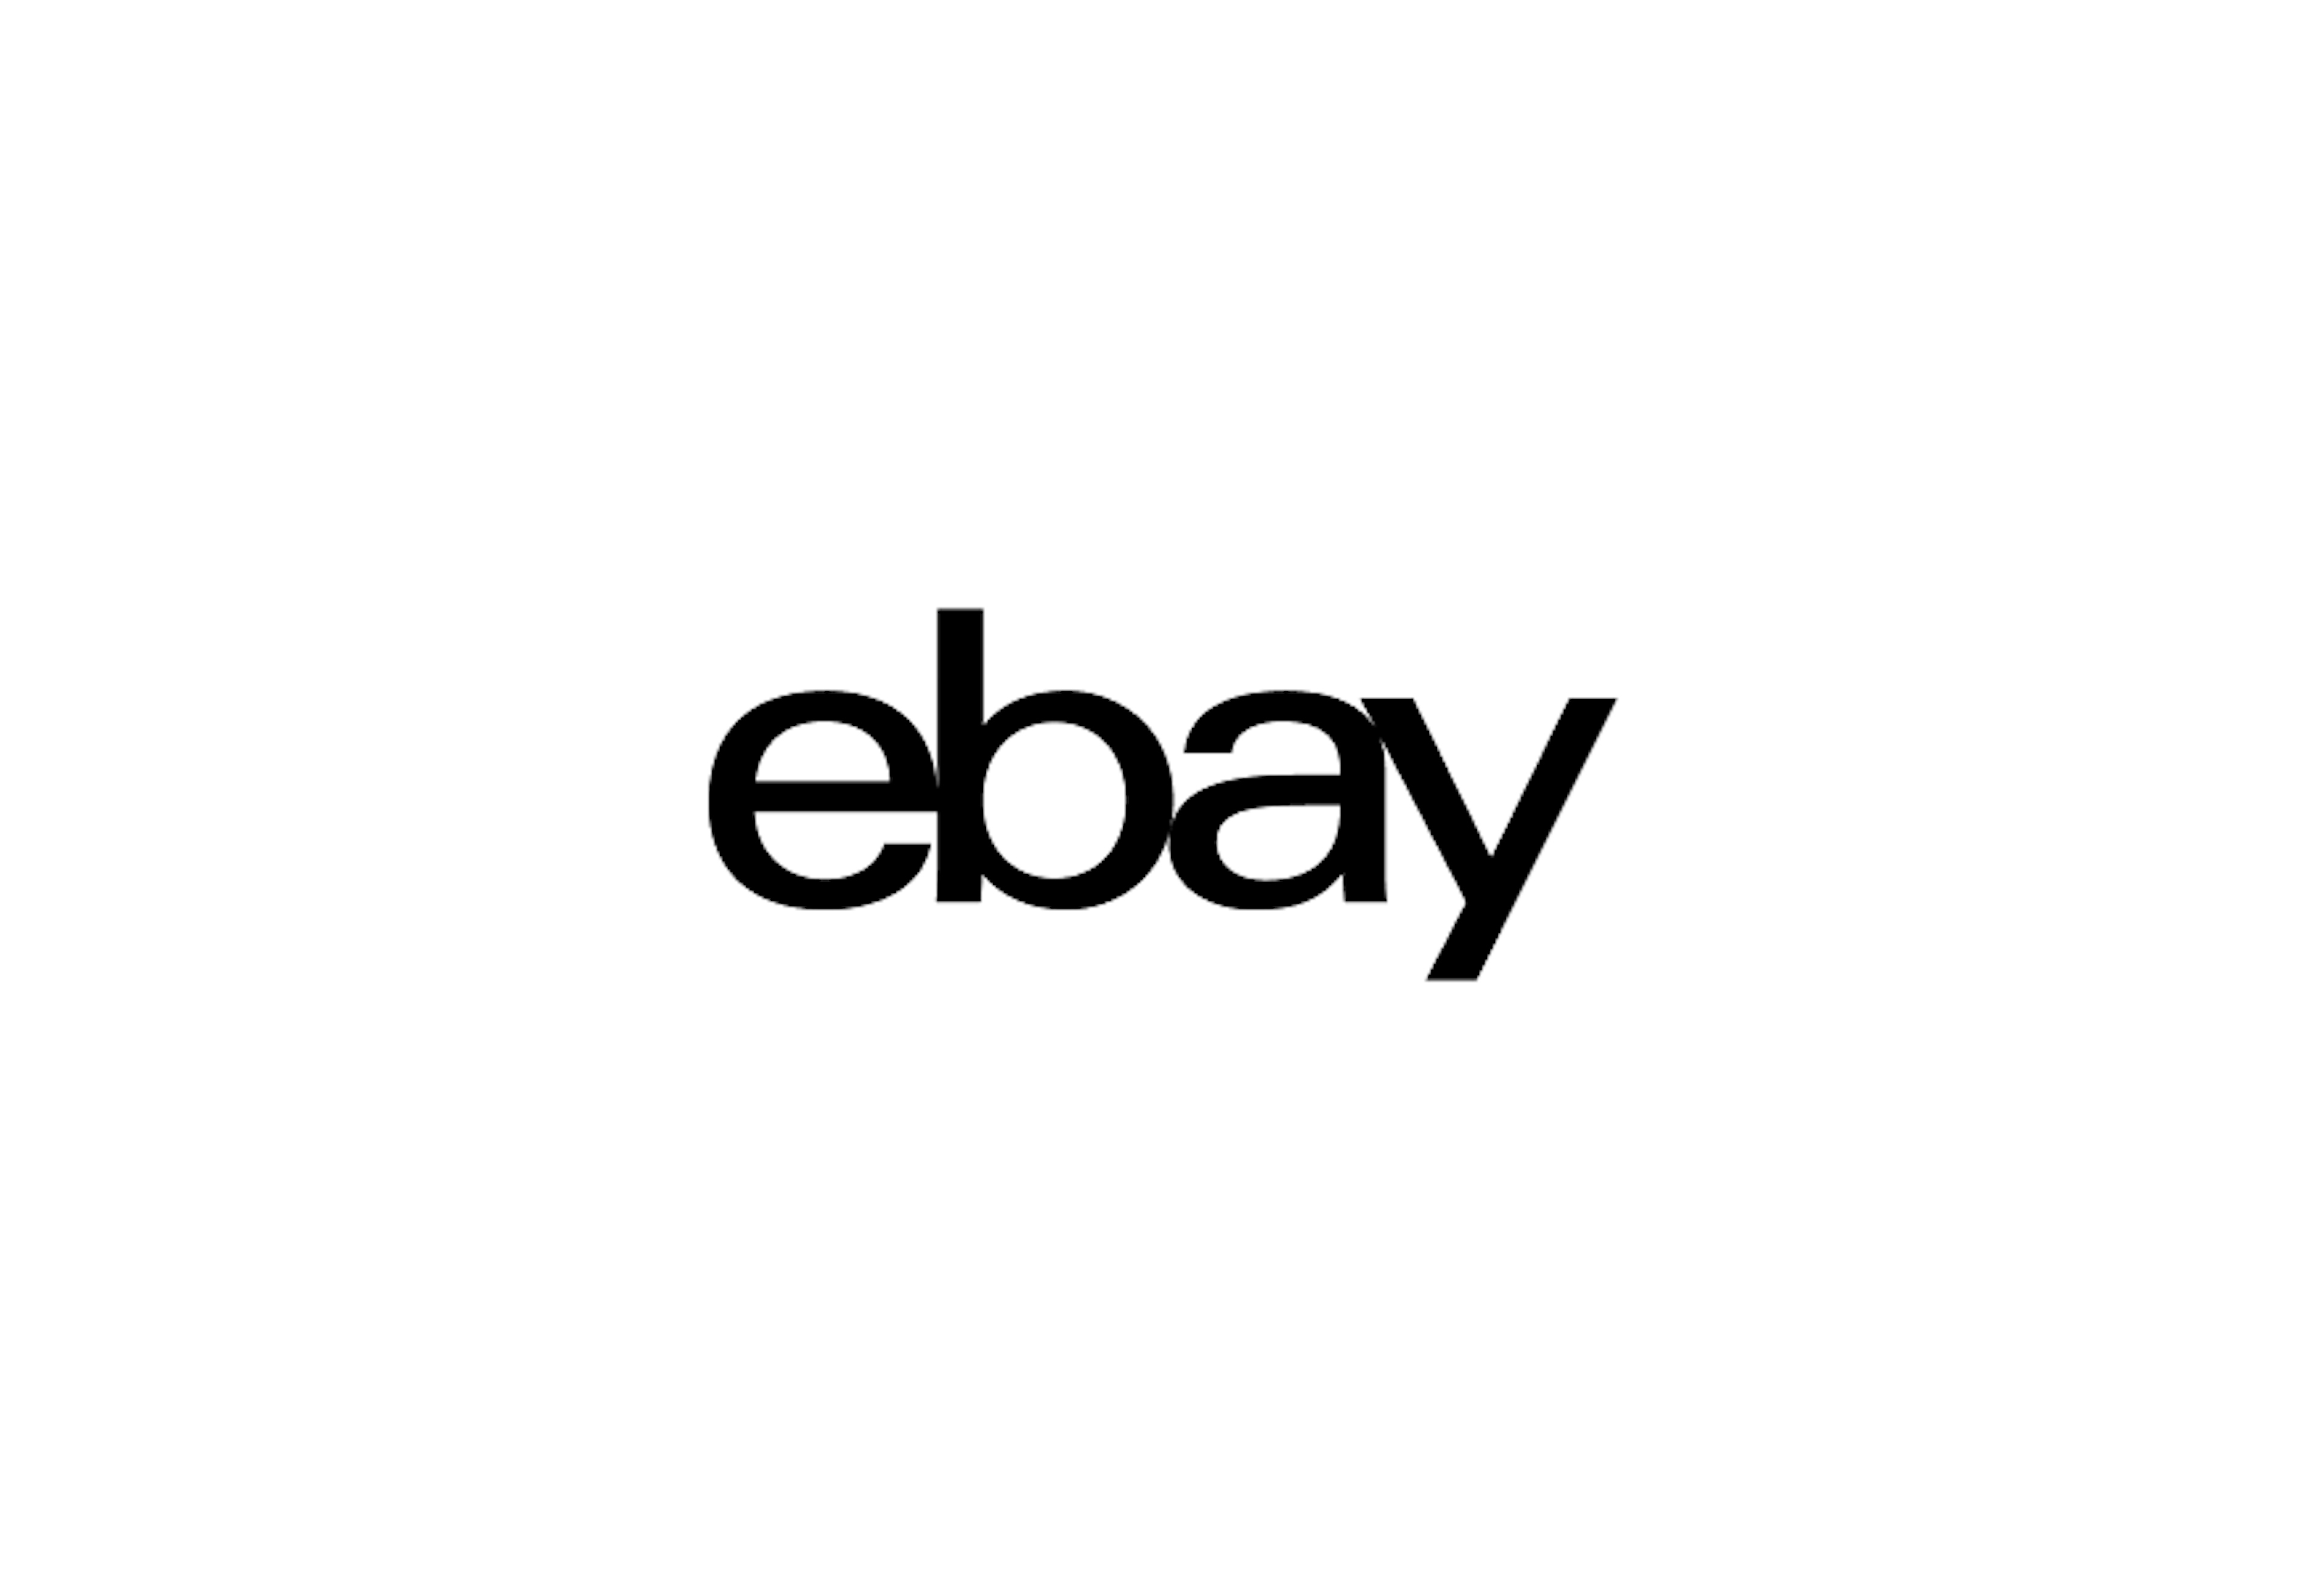 Black eBay logo on white background.